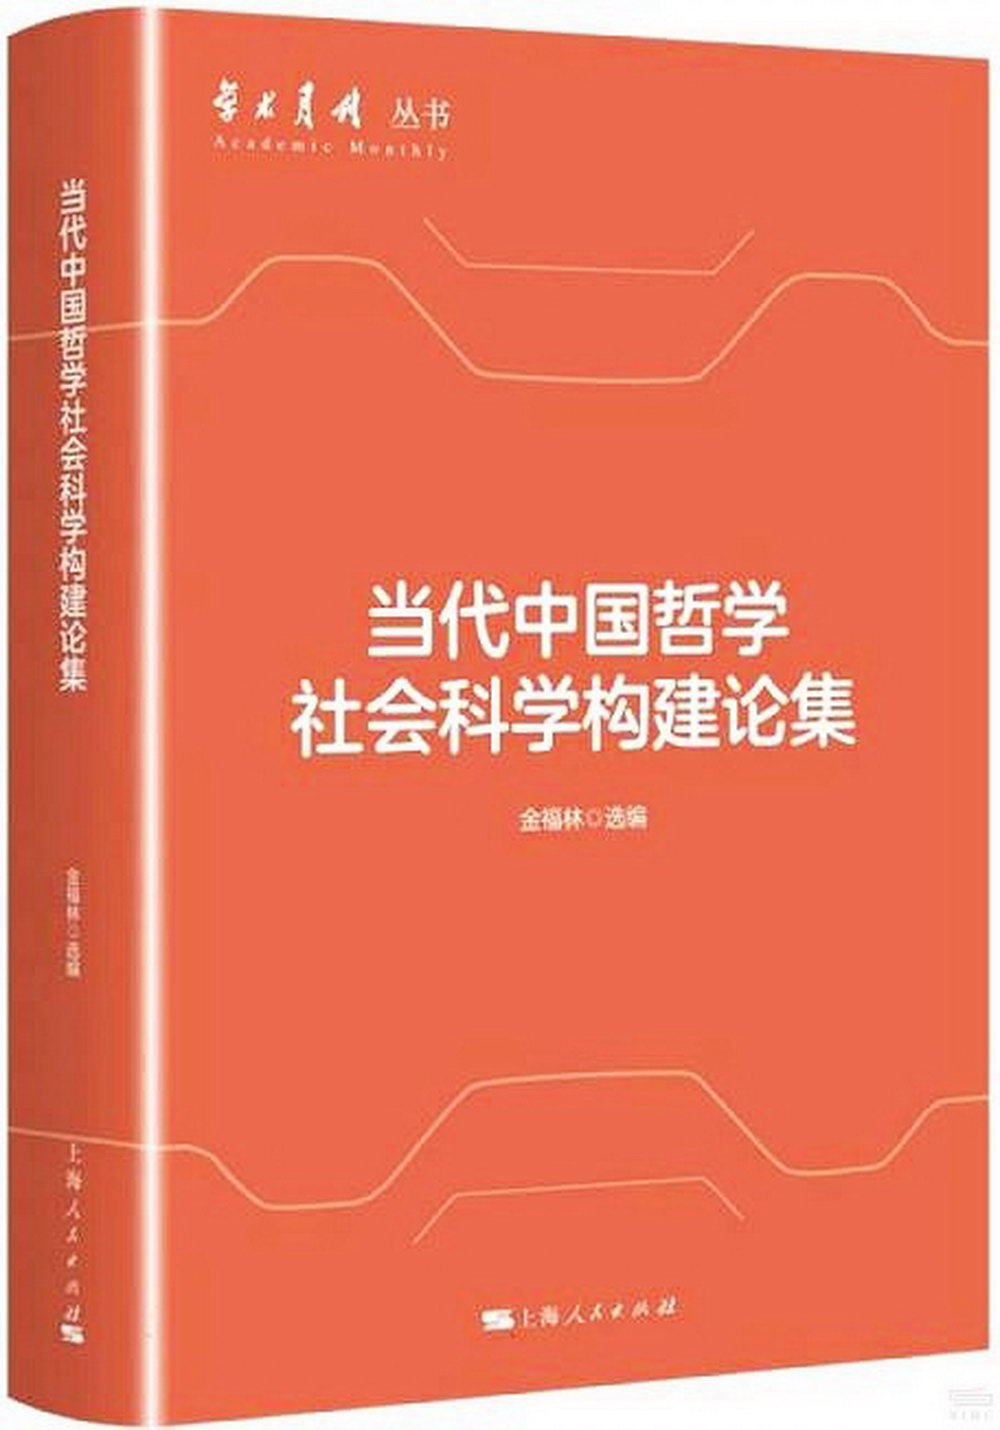 當代中國哲學社會科學構建論集